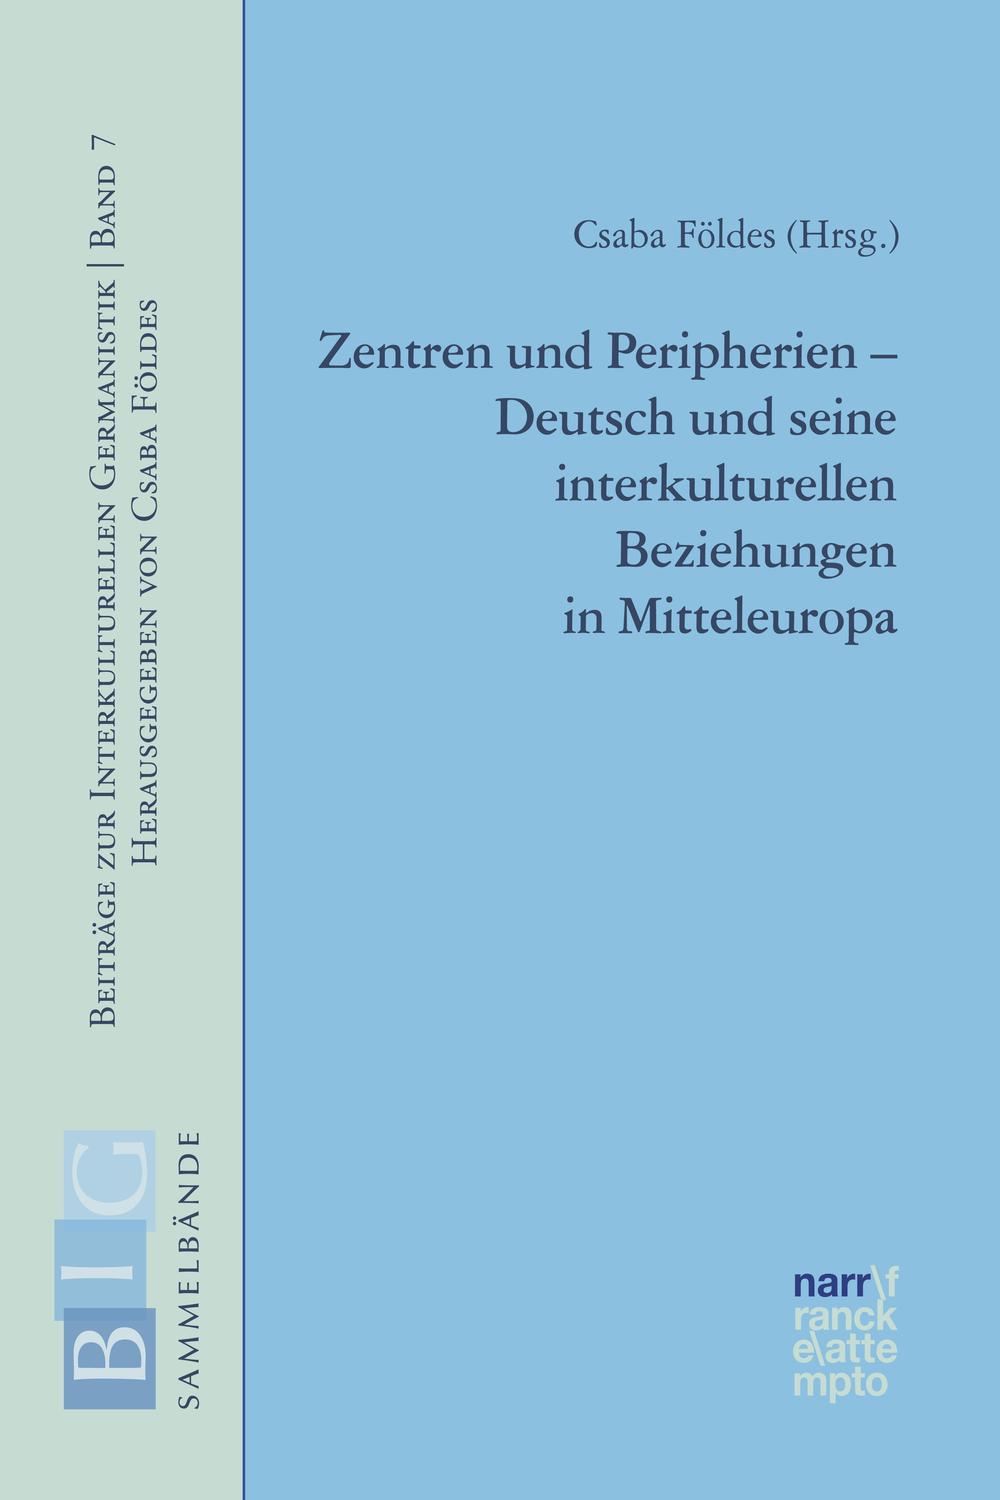 Zentren und Peripherien - Deutsch und seine interkulturellen Beziehungen in Mitteleuropa - Csaba Földes